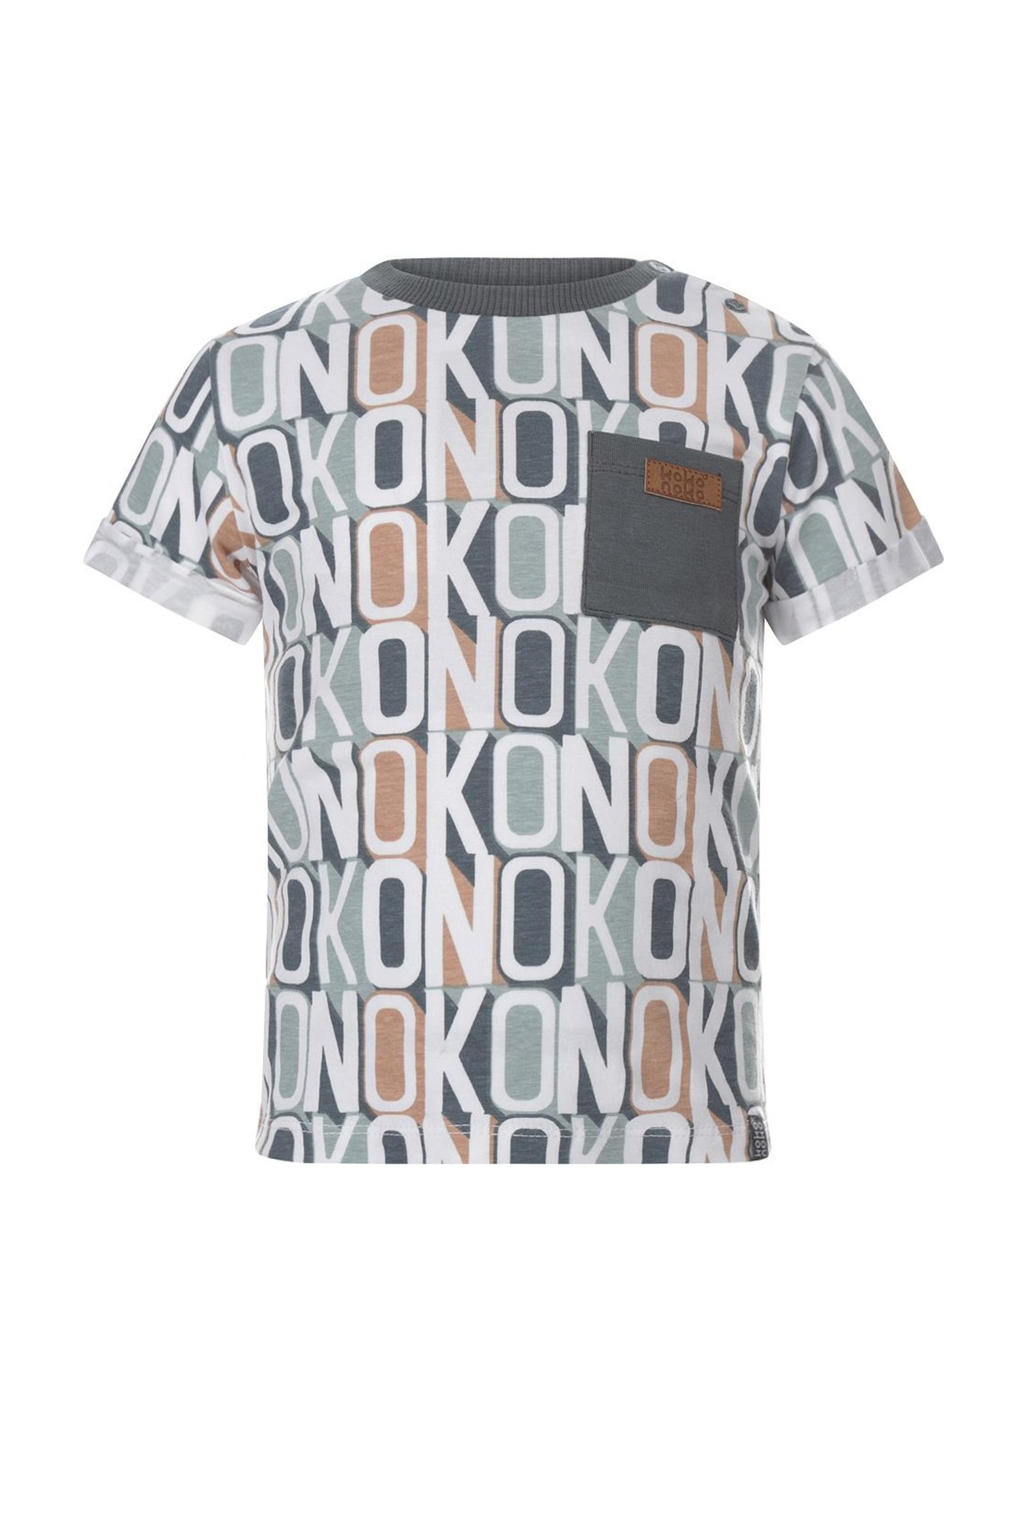 Blauw en witte jongens Koko Noko T-shirt van stretchkatoen met all over print, korte mouwen en ronde hals